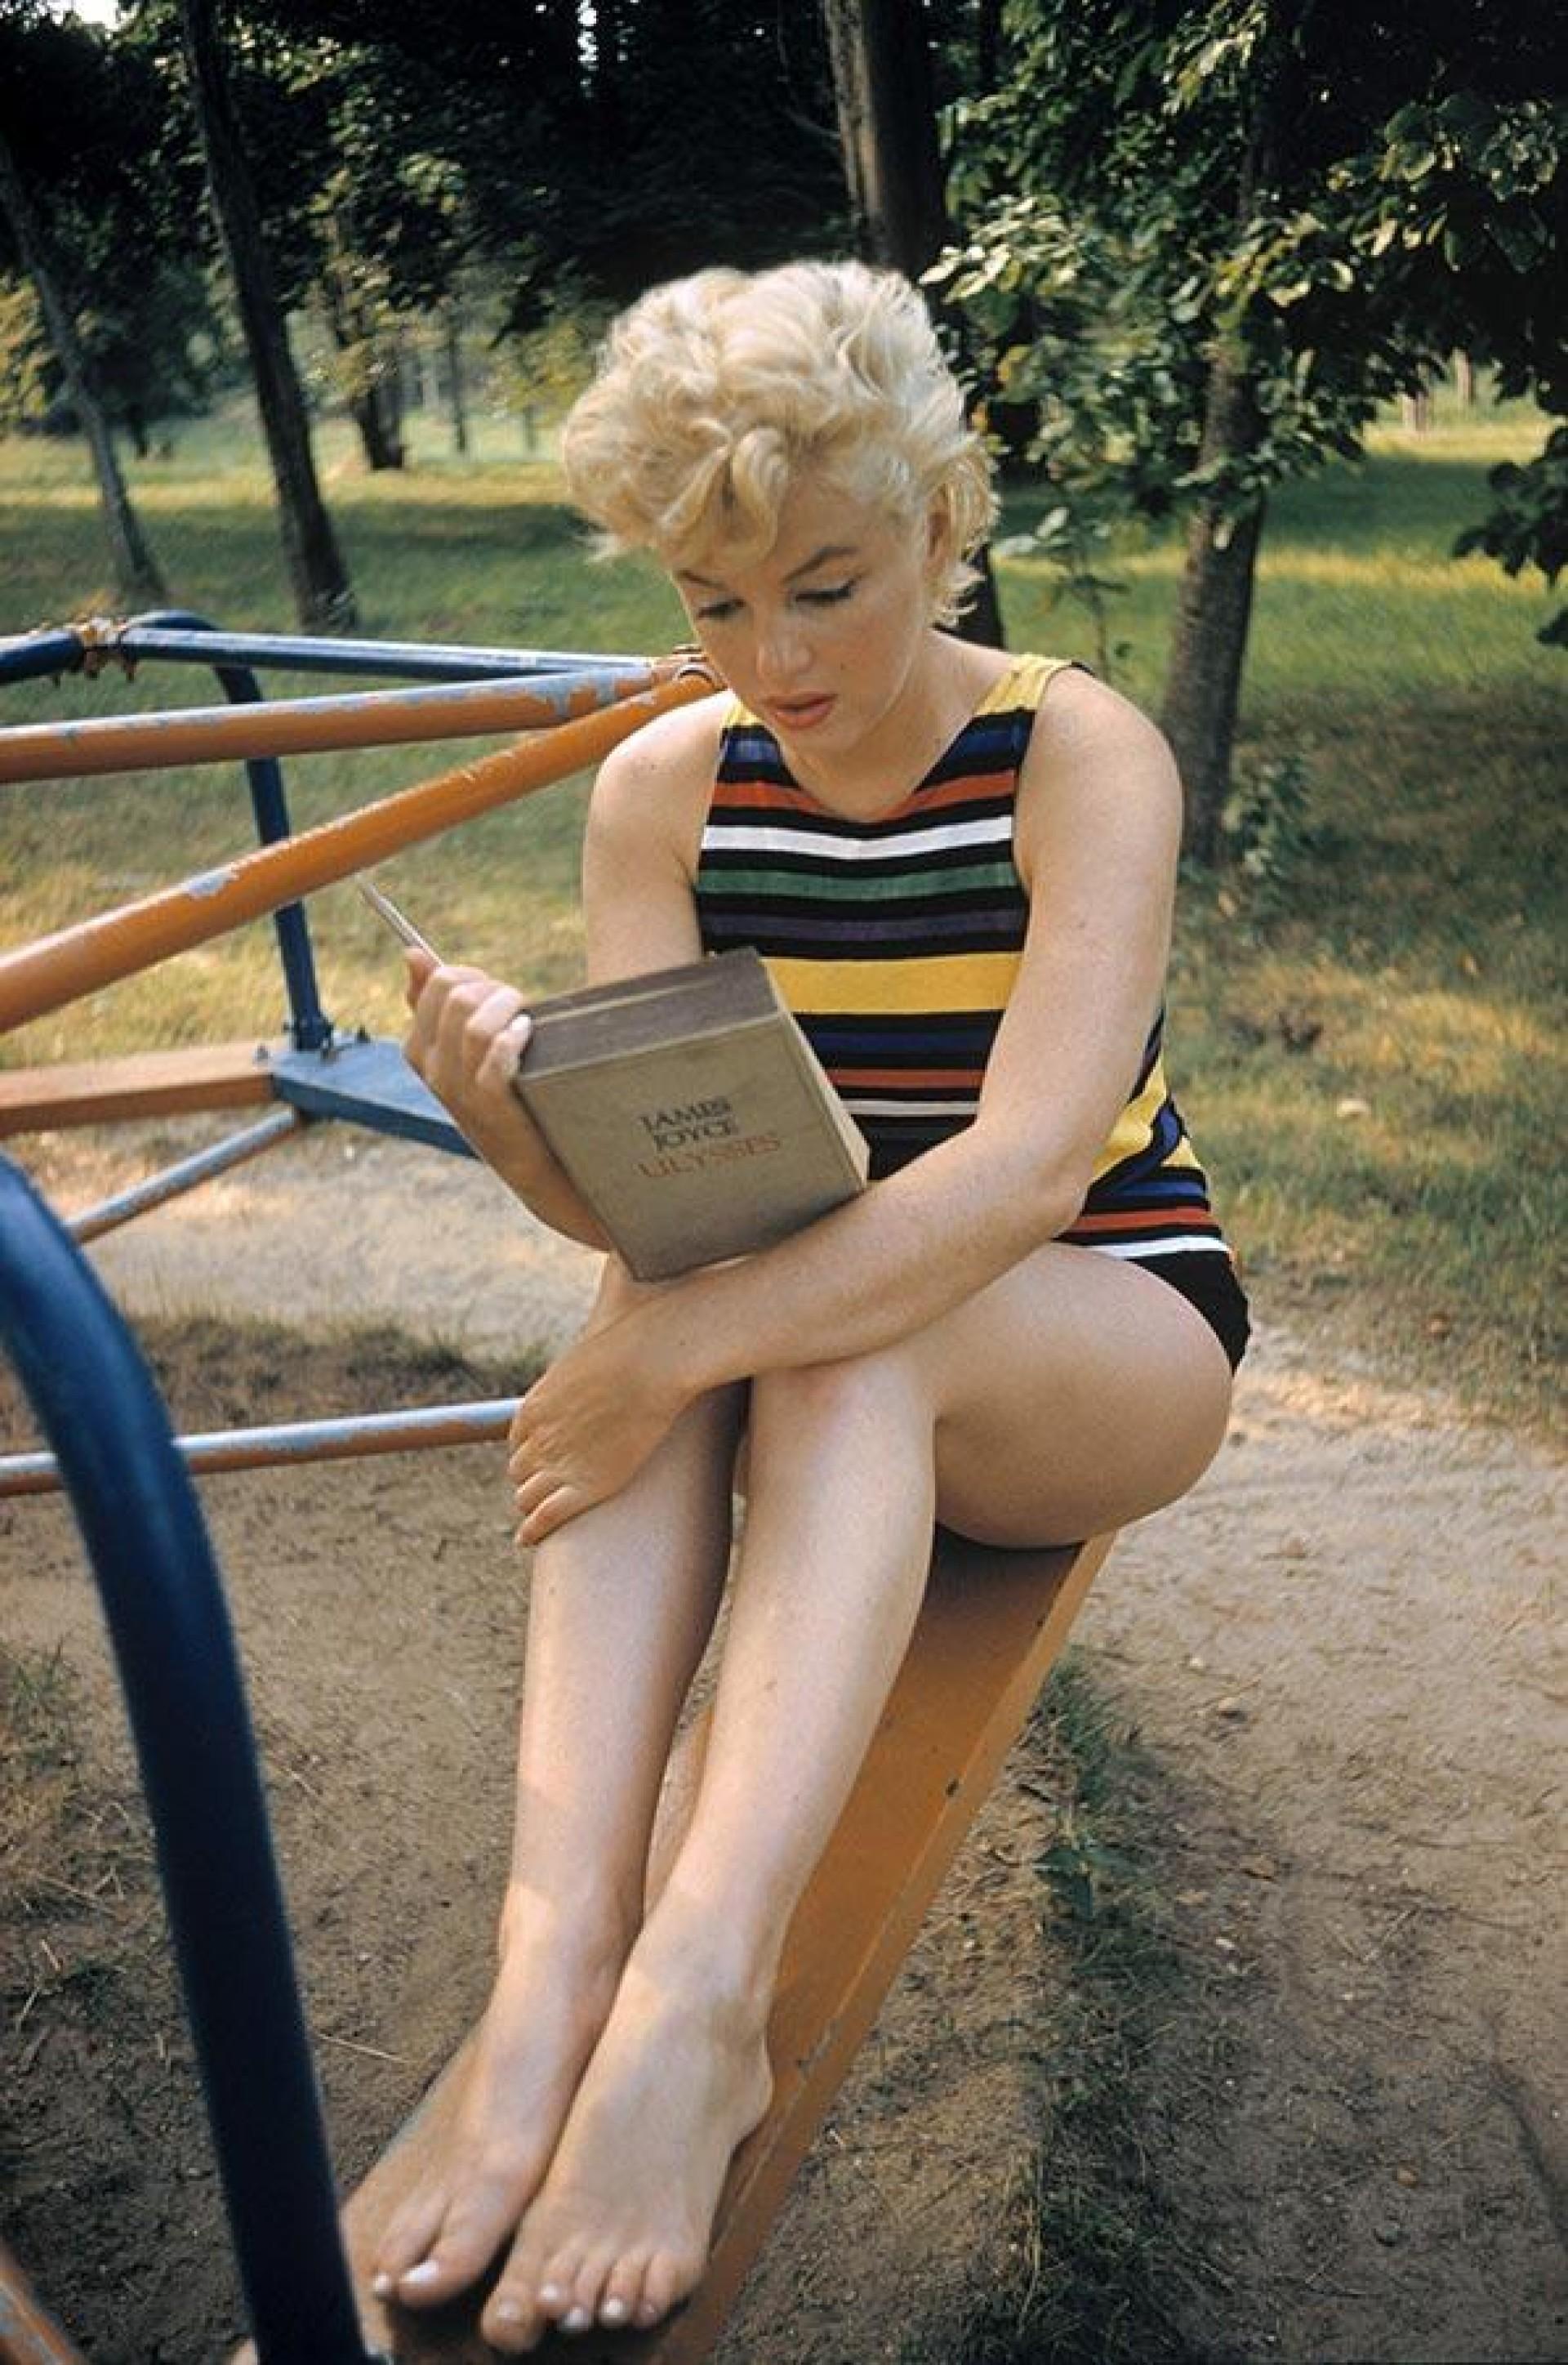 "Marilyn Monroe liest Ulysses von
James Joyce, New York, Long Island, 1955".

Alle verfügbaren Größen und Ausgaben:
24" x 20", Auflage 25 + 3 Probedrucke
34" x 24", Auflage 25 + 3 Probedrucke

"Eve Arnold, 1912 als Tochter russischer Einwanderer in